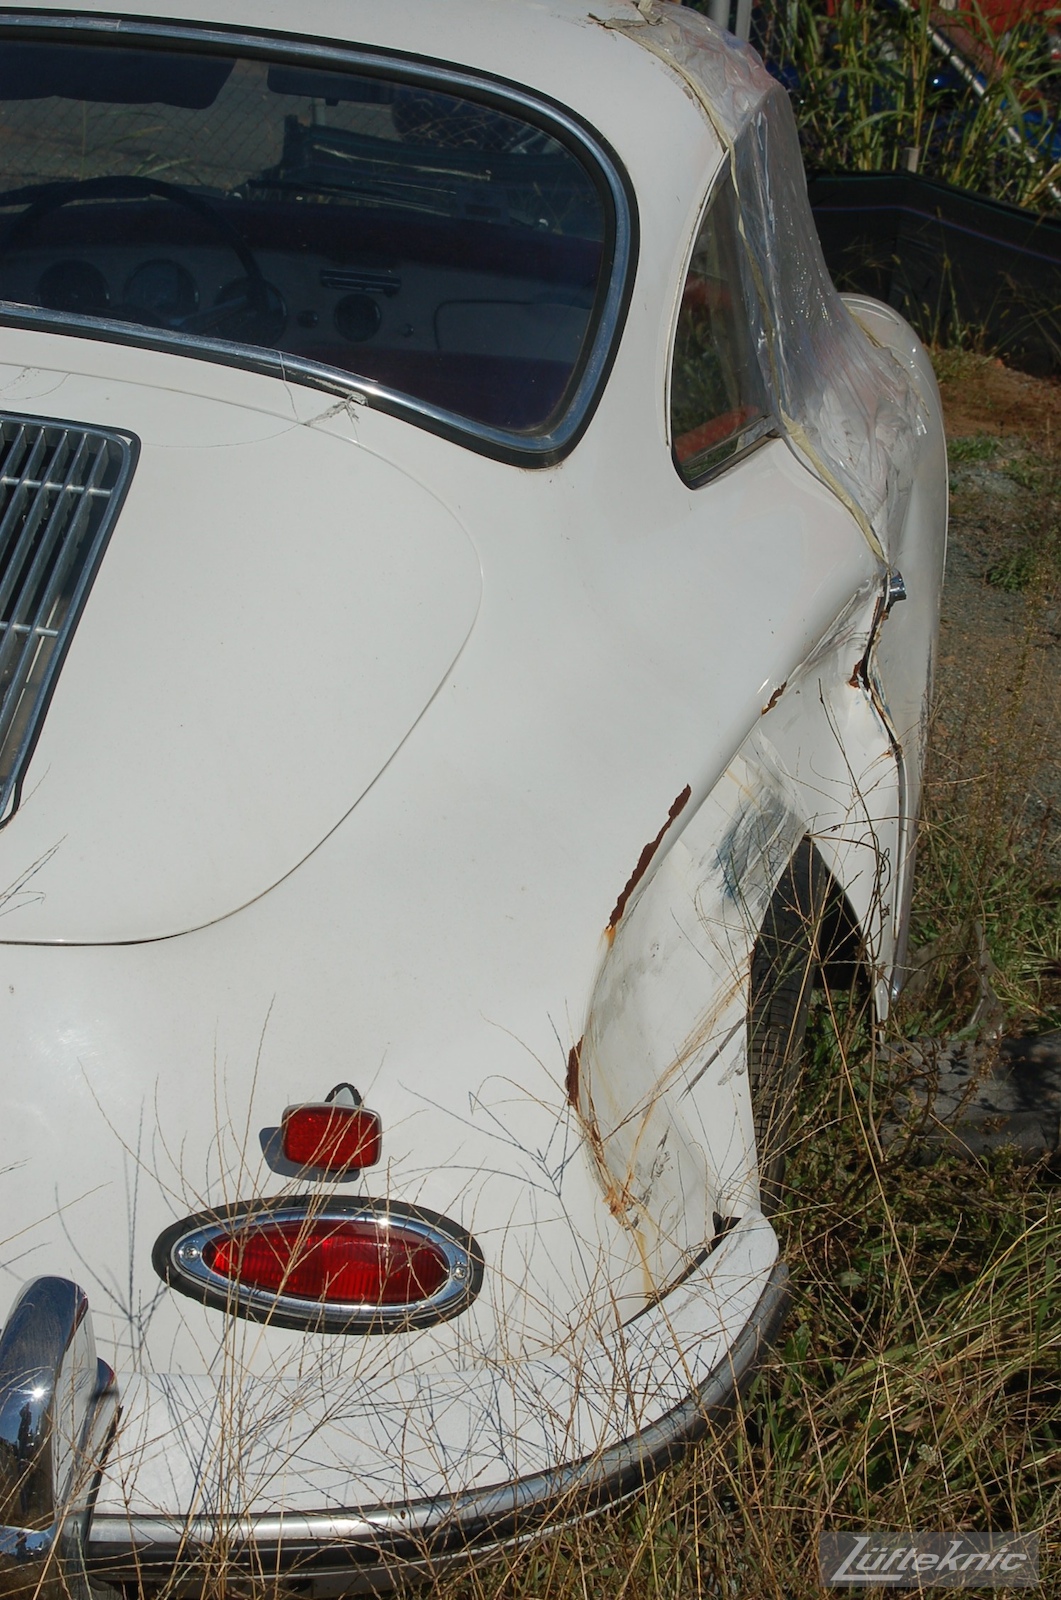 1964 Porsche 356SC restoration as found in a field.